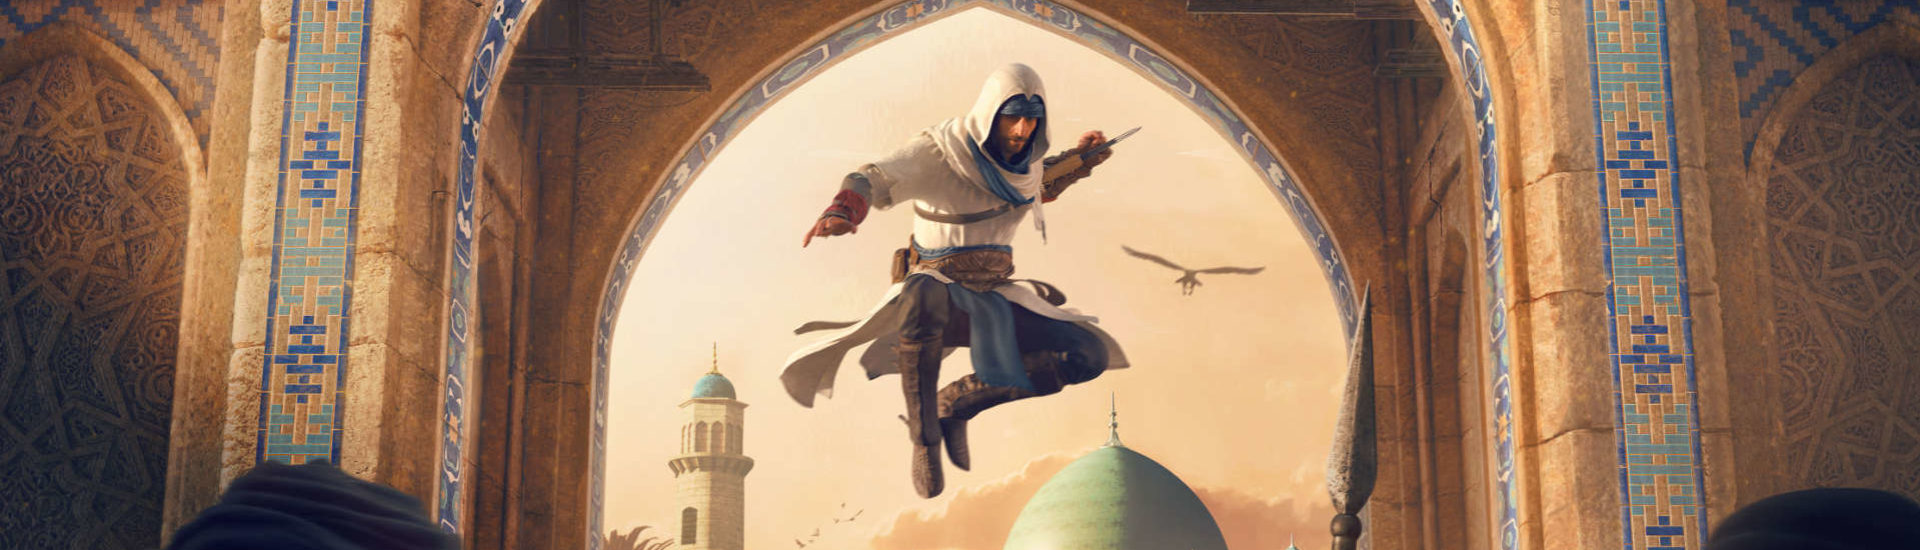 Assassin’s Creed Mirage: Offiziell von Ubisoft bestätigt